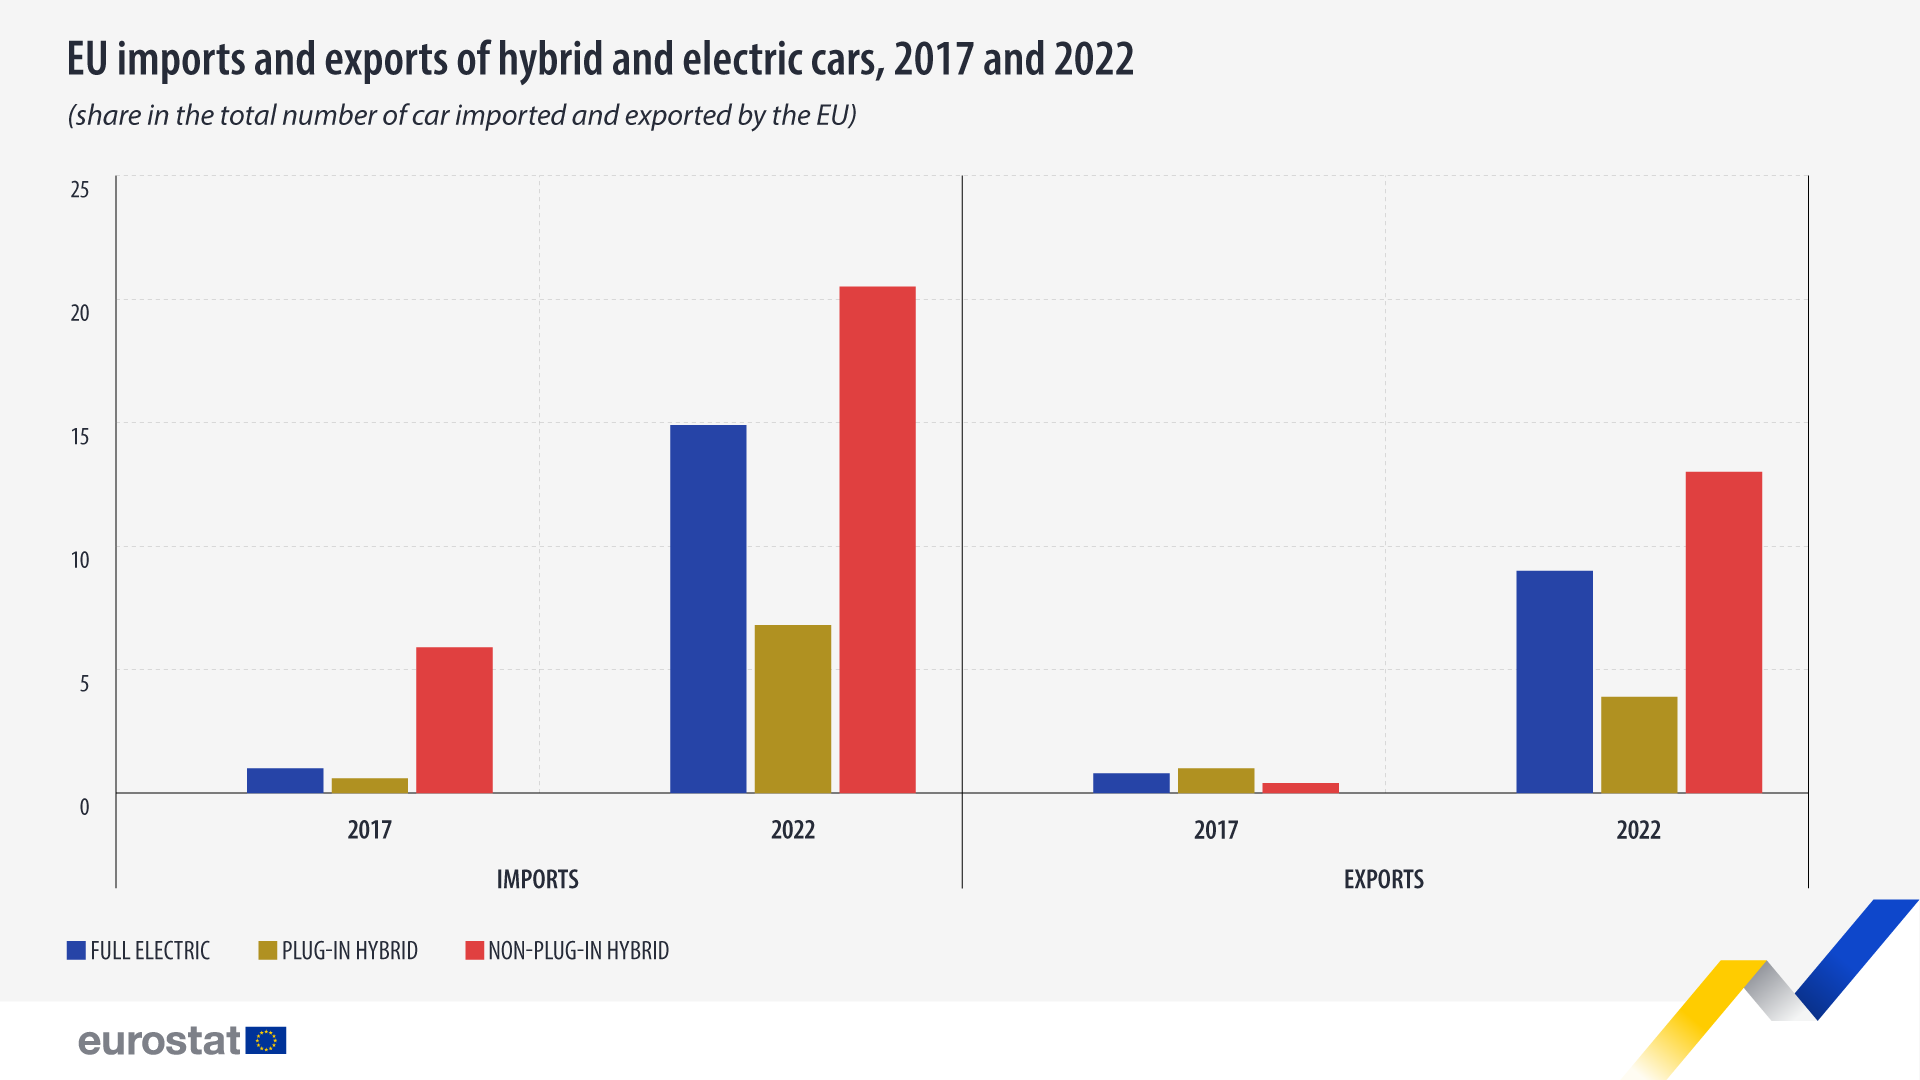 बार चार्ट: यूरोपीय संघ द्वारा हाइब्रिड और इलेक्ट्रिक कारों का आयात और निर्यात, 2017 और 2022, यूरोपीय संघ द्वारा आयातित और निर्यात की गई कारों की कुल संख्या में हिस्सेदारी